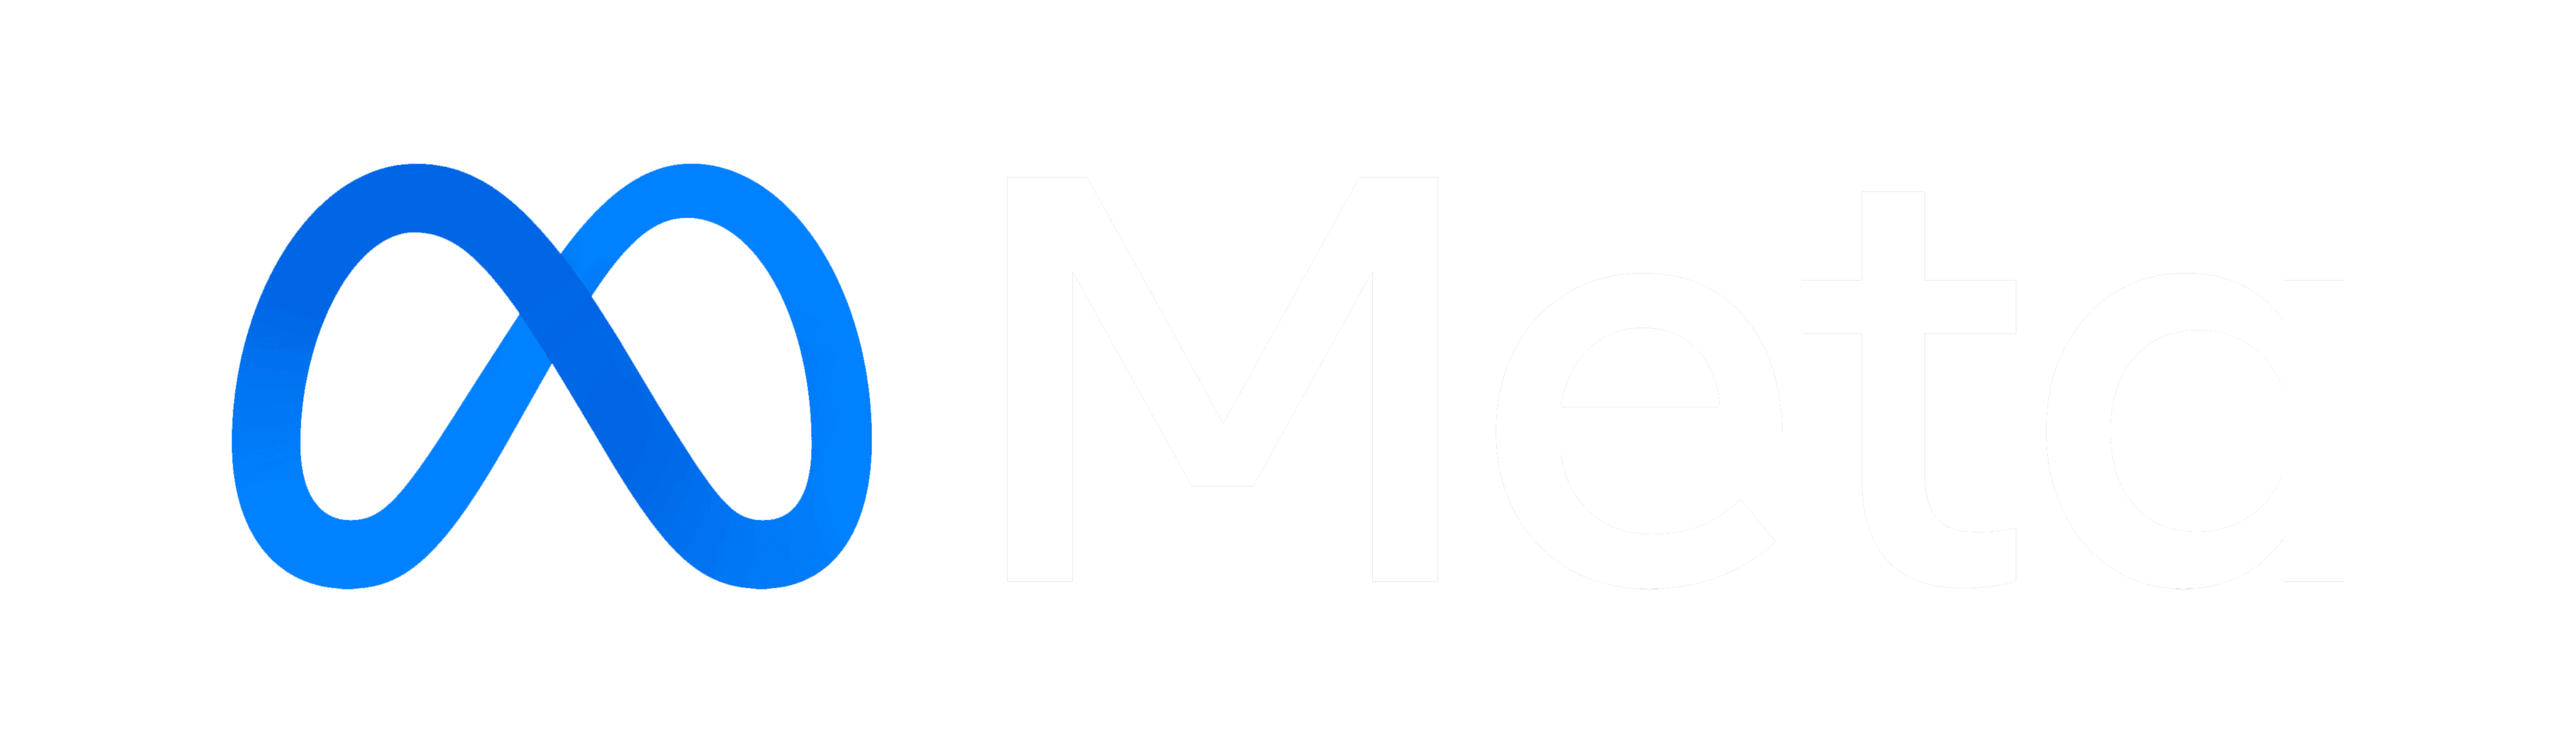 Meta company